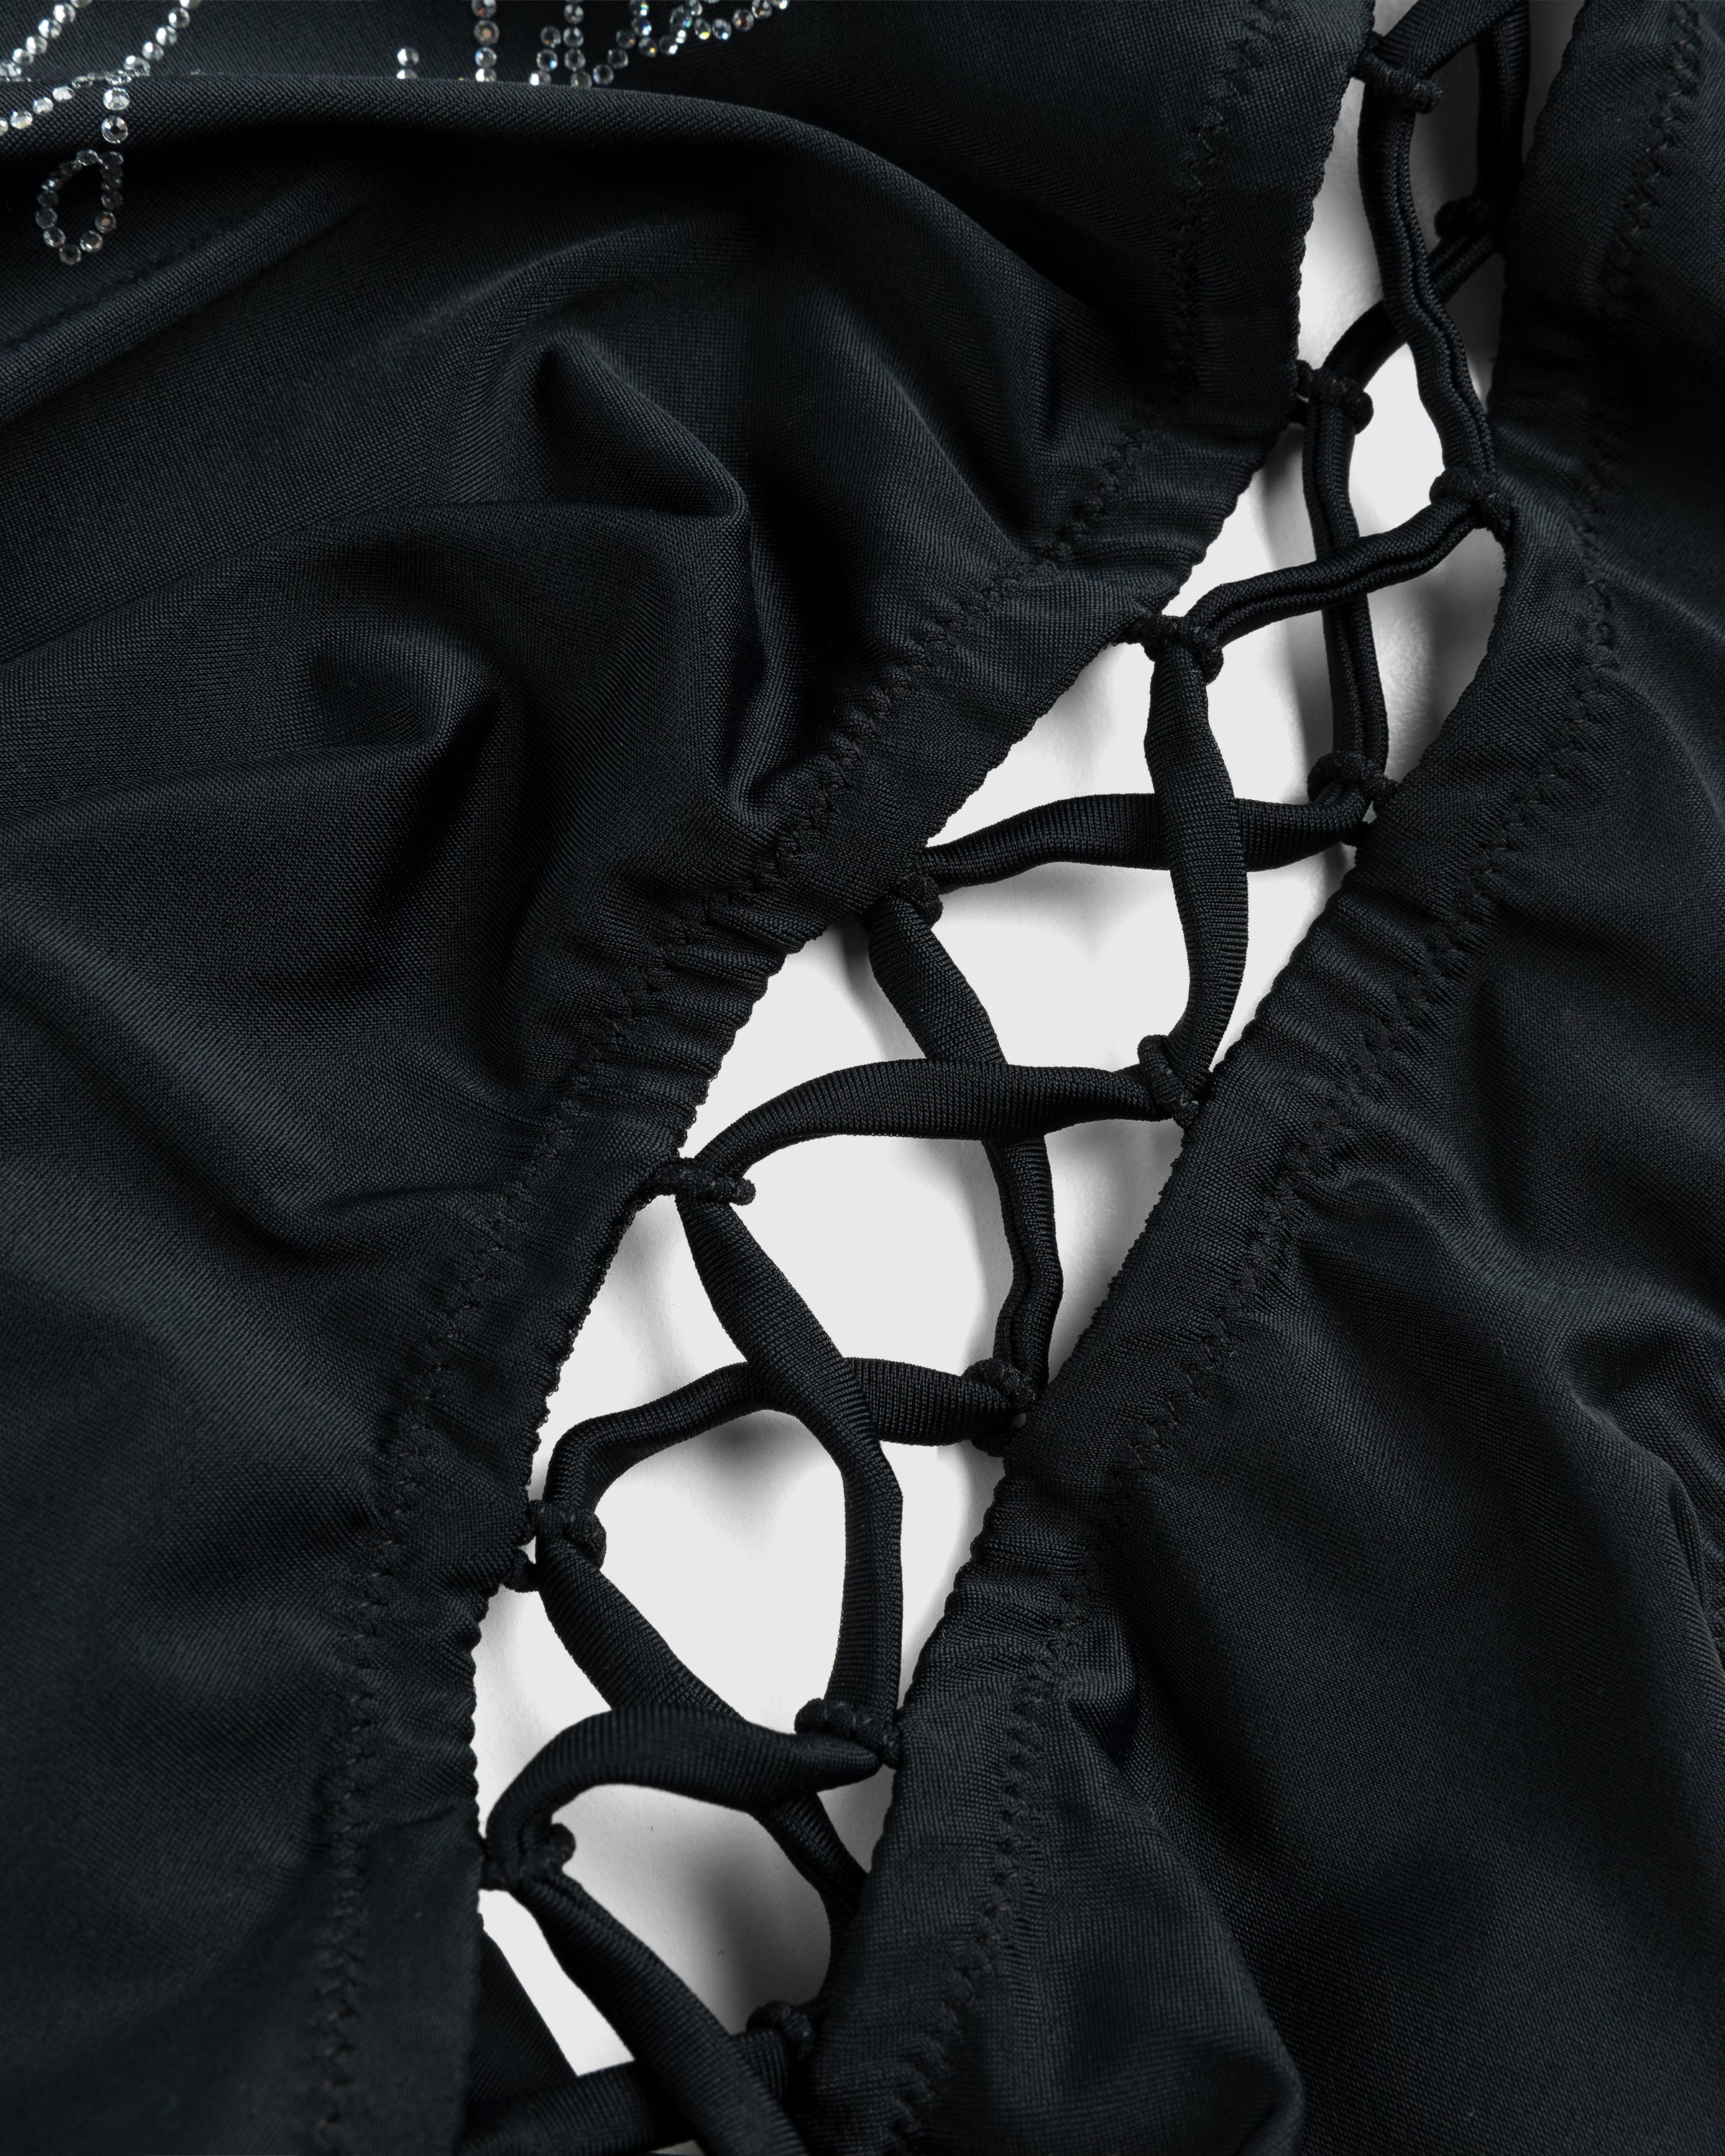 Jean Paul Gaultier - Évidemment Swimsuit Black - Clothing - Black - Image 4